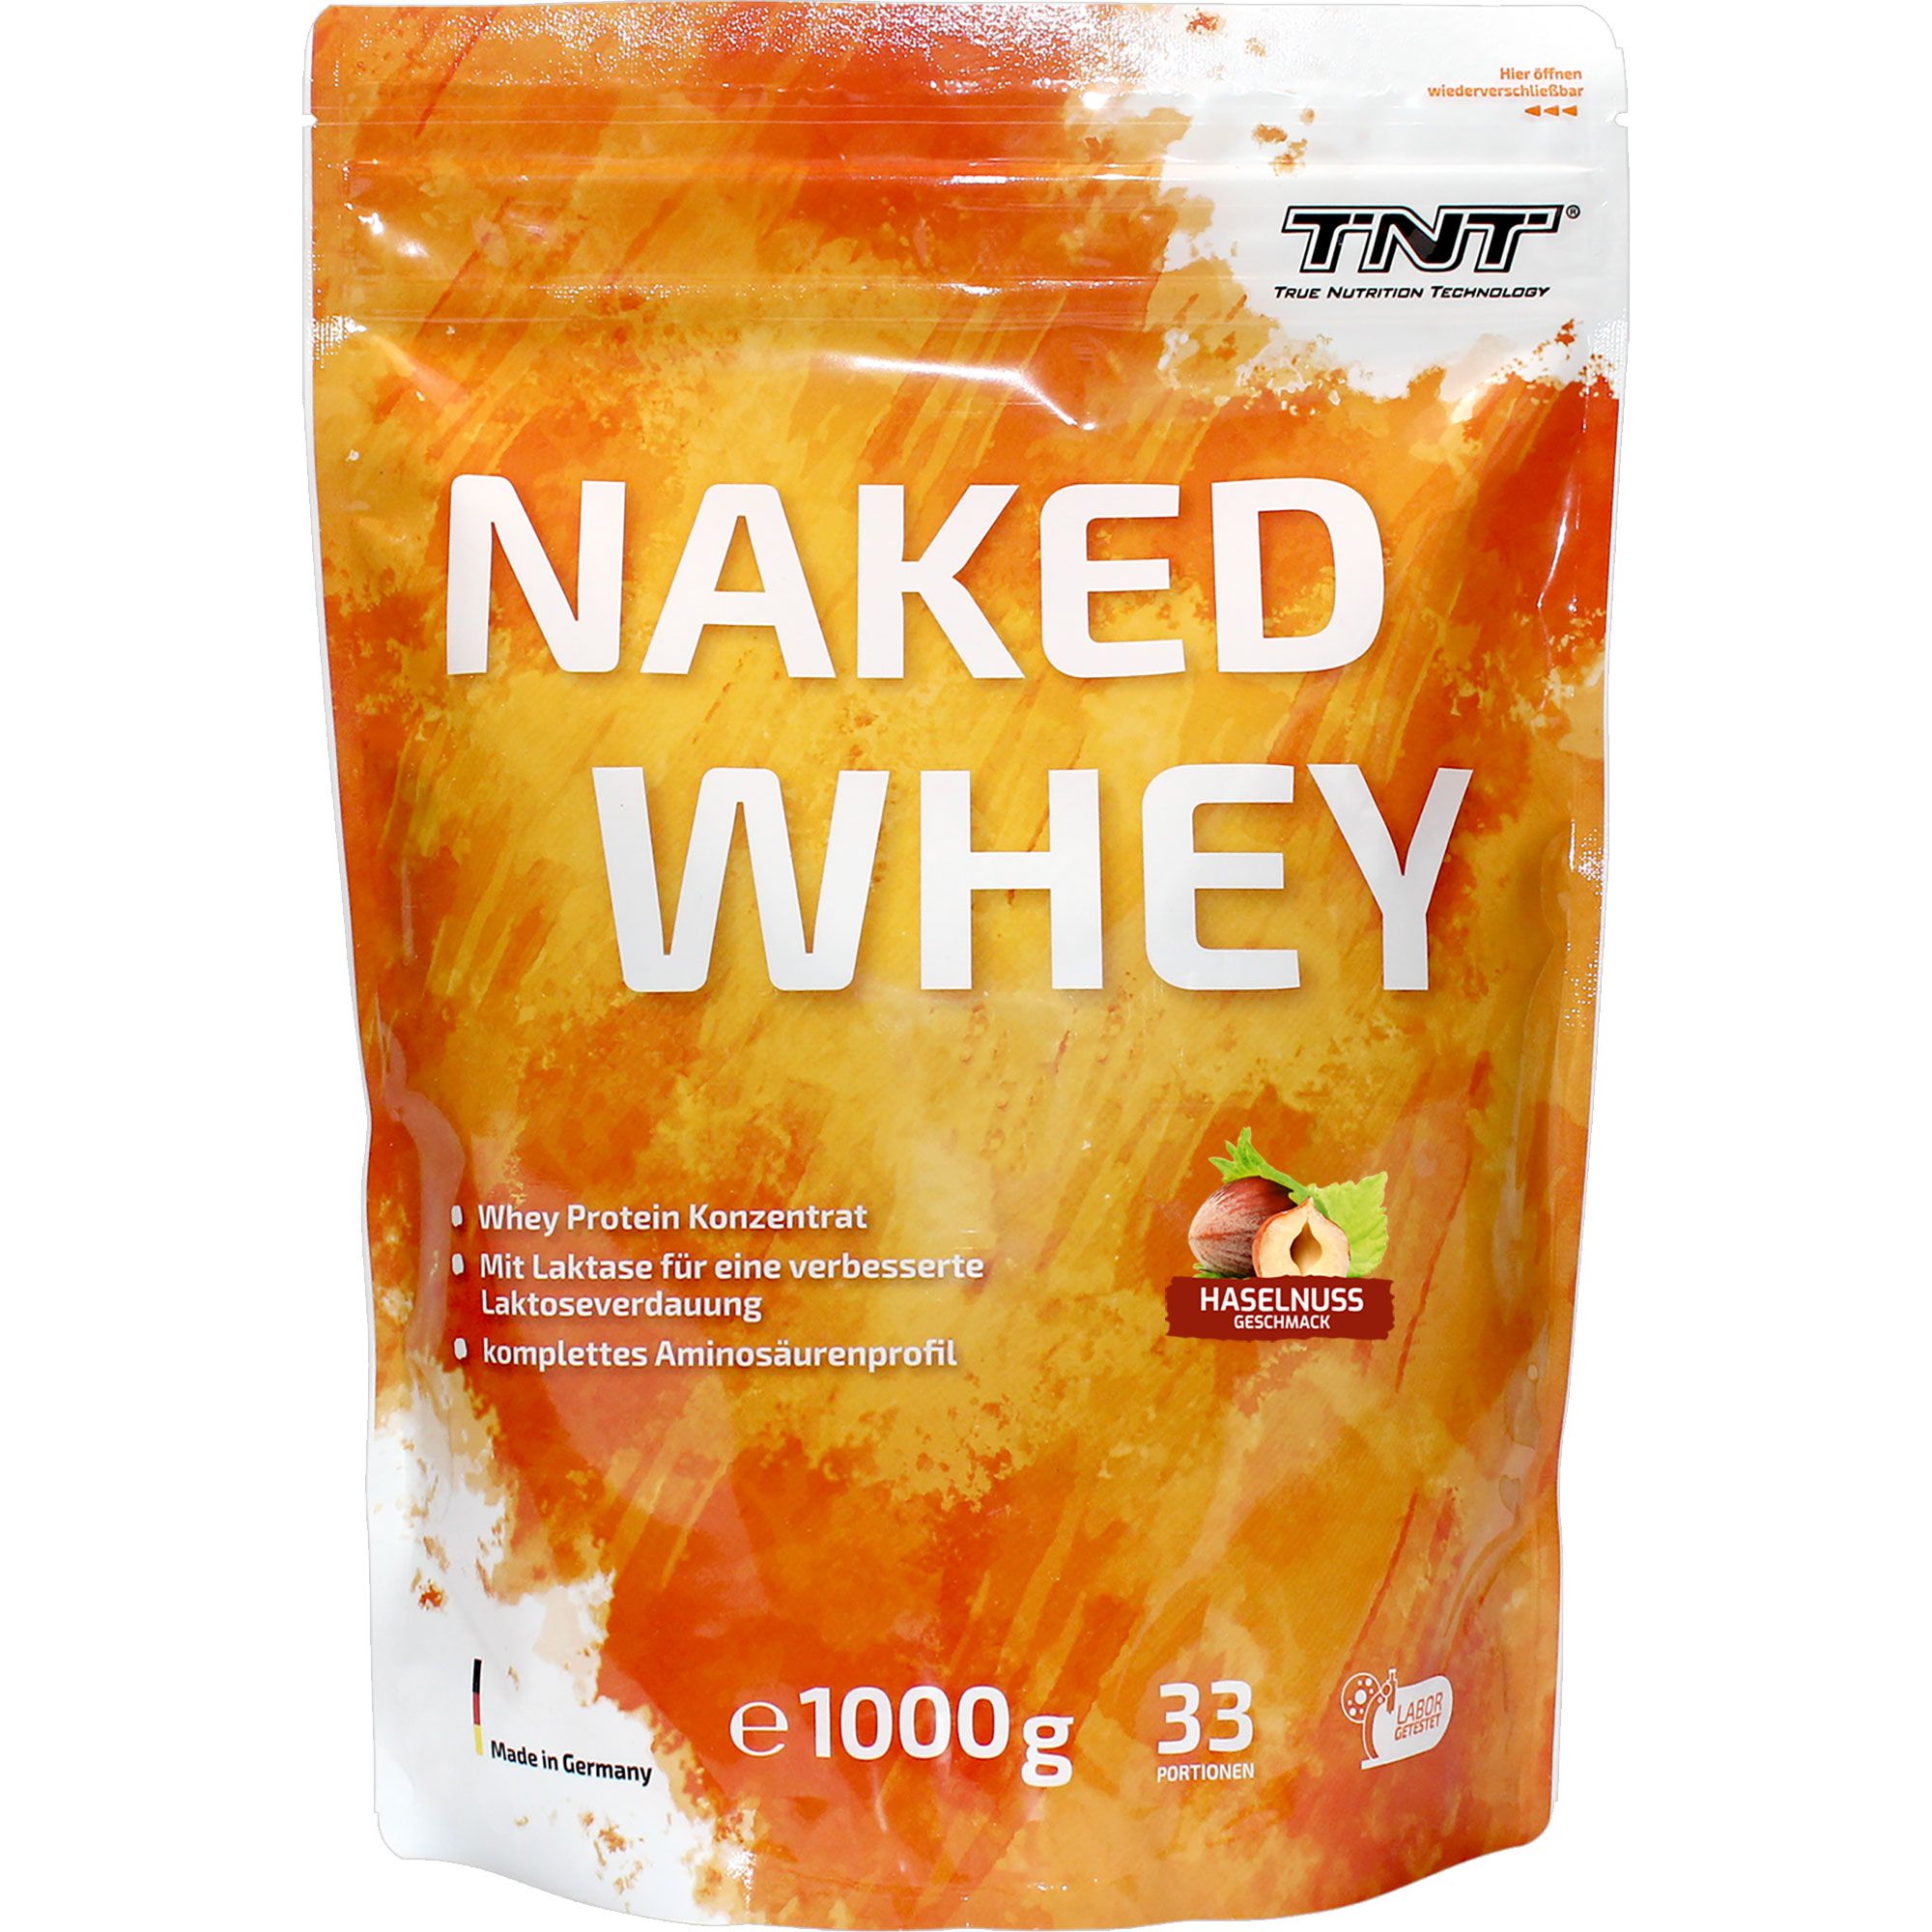 TNT Naked Whey Protein - Haselnuss, hoher Eiweißanteil, wenig Kohlenh., Laktase f. bessere Verdauung